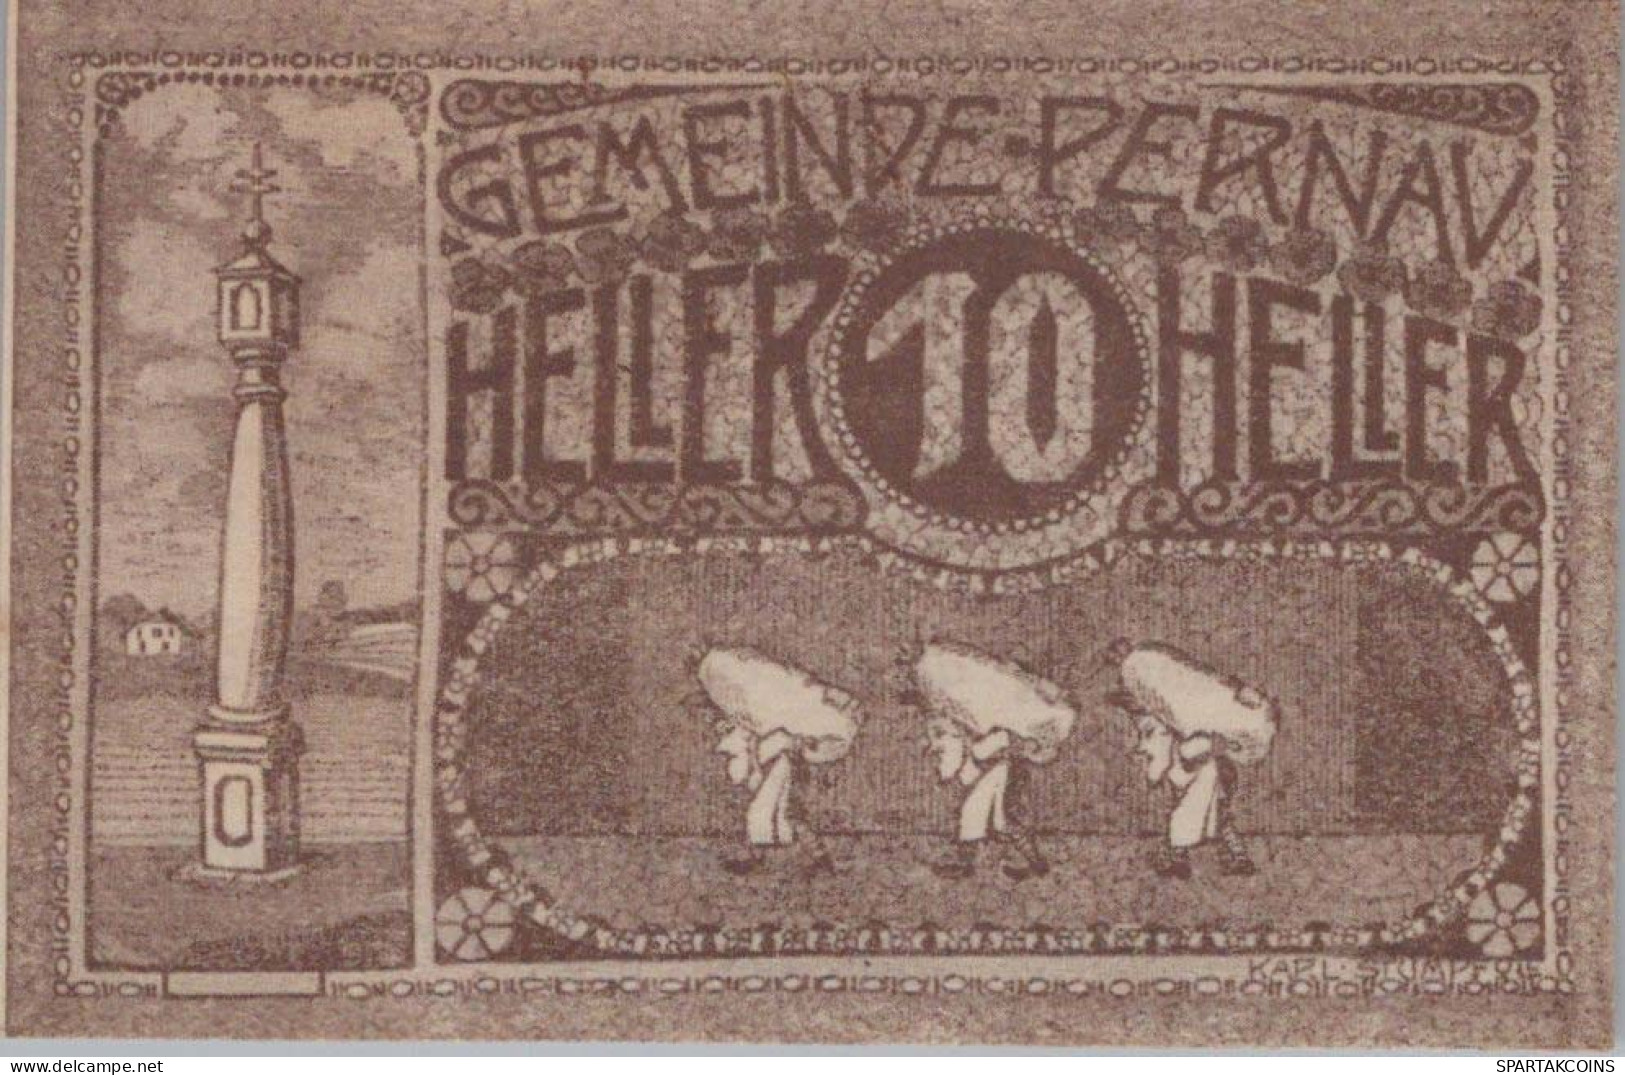 10 HELLER 1920 Stadt PERNAU Oberösterreich Österreich Notgeld Banknote #PE345 - Lokale Ausgaben